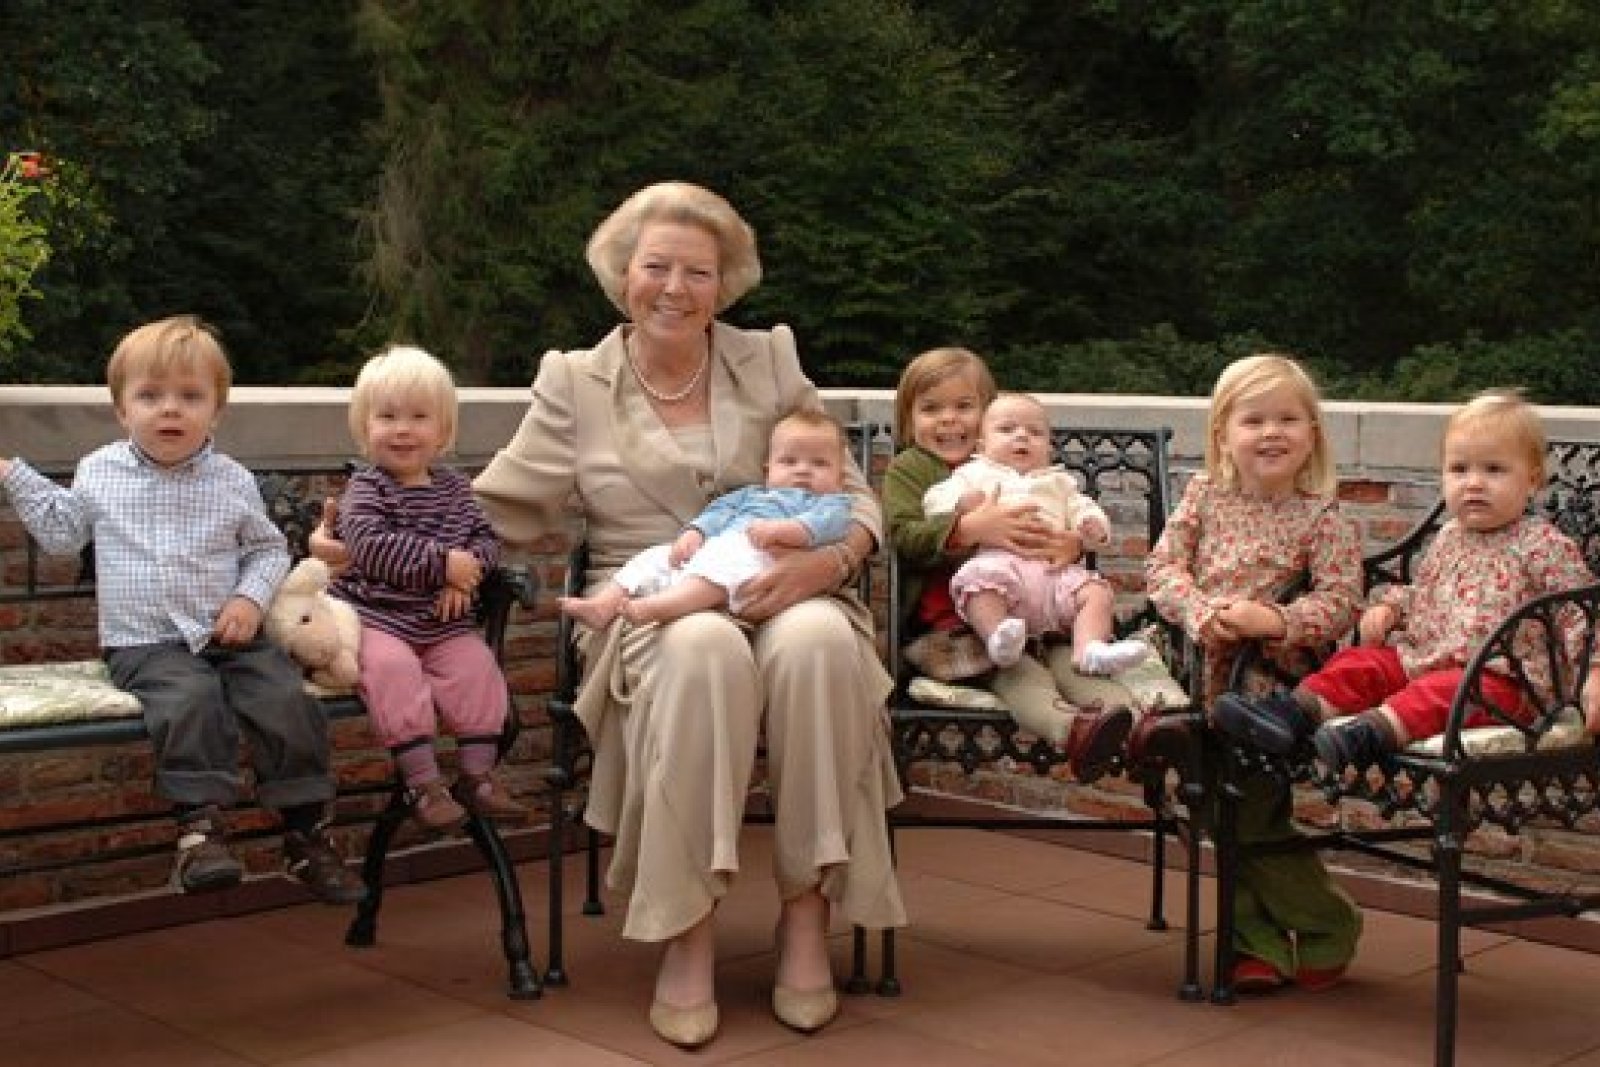 The Queen with her grandchildren